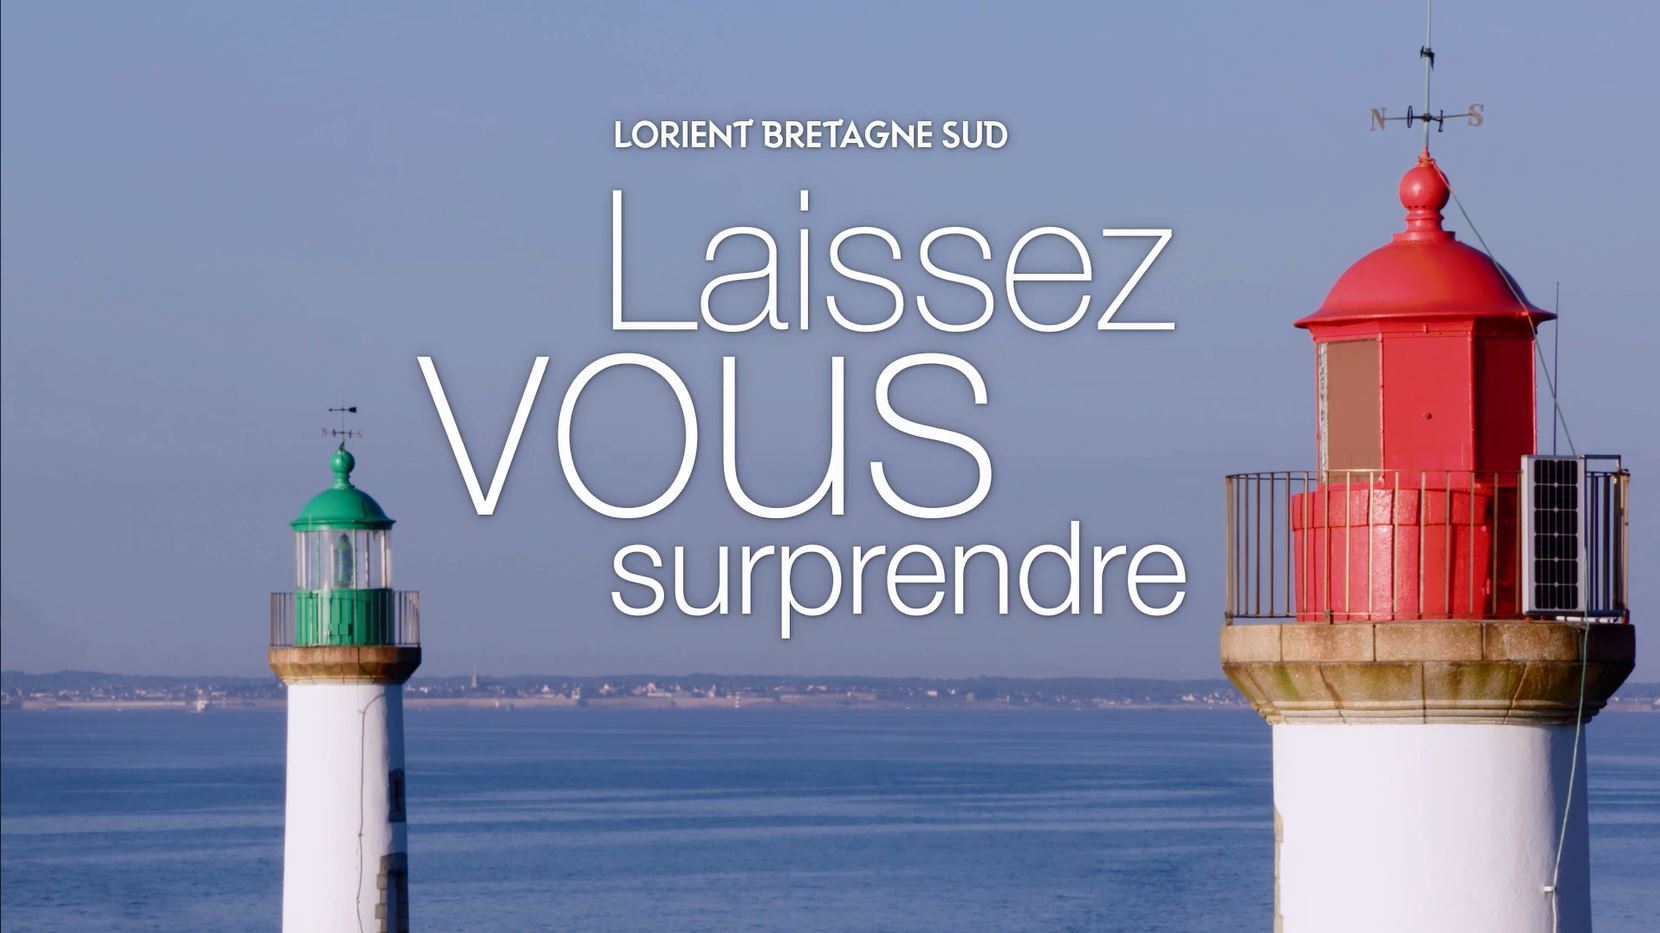 Lorient Bretagne Sud, laissez-vous surprendre